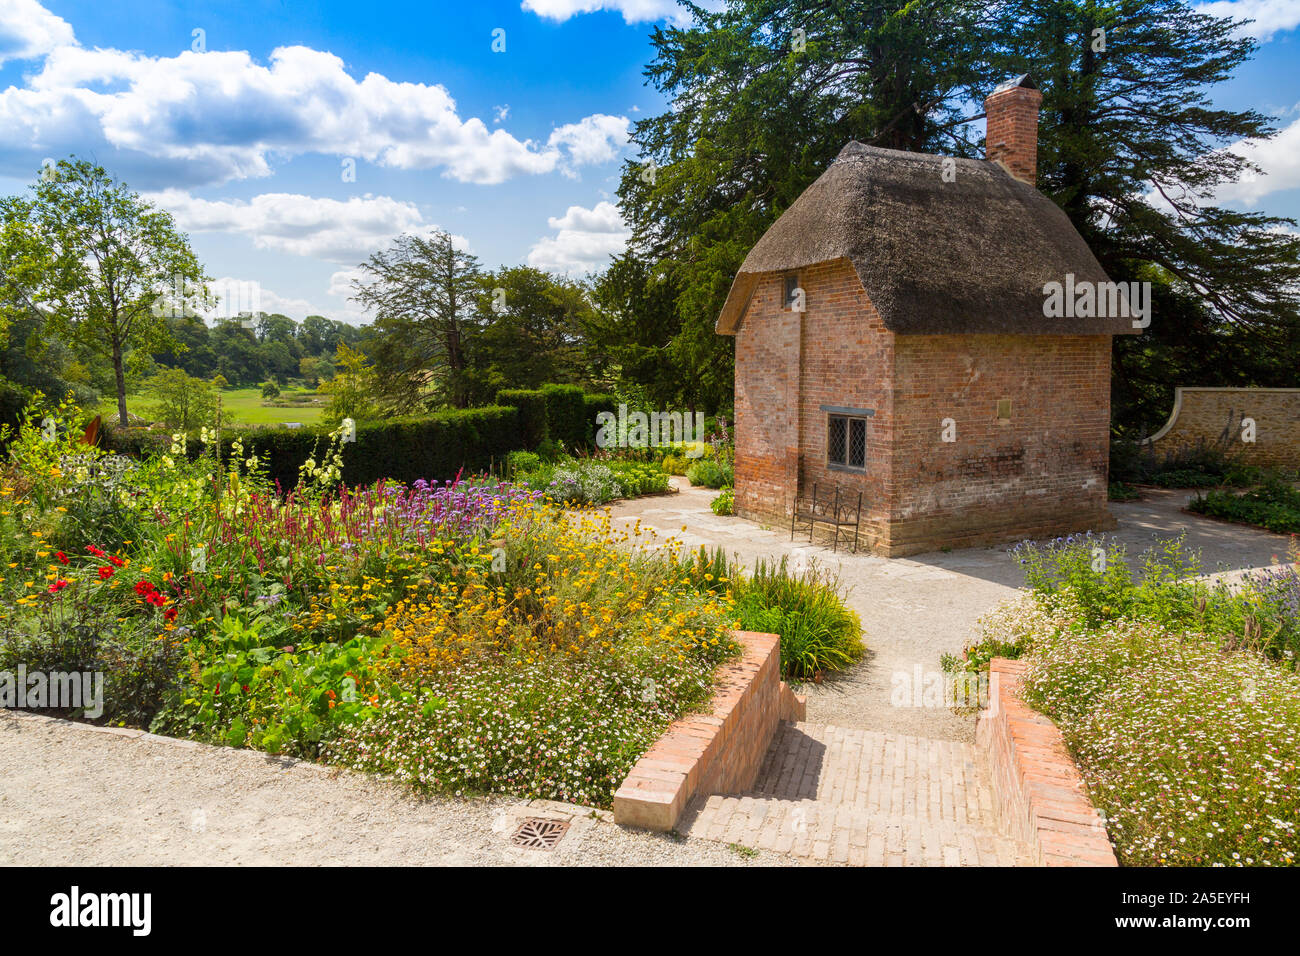 Le Chalet jardin coloré avec sa maison du jardinier de chaume dans le 'nouvellement restauré le triton dans Somerset' garden et hôtel, nr Bruton, Angleterre, U Banque D'Images